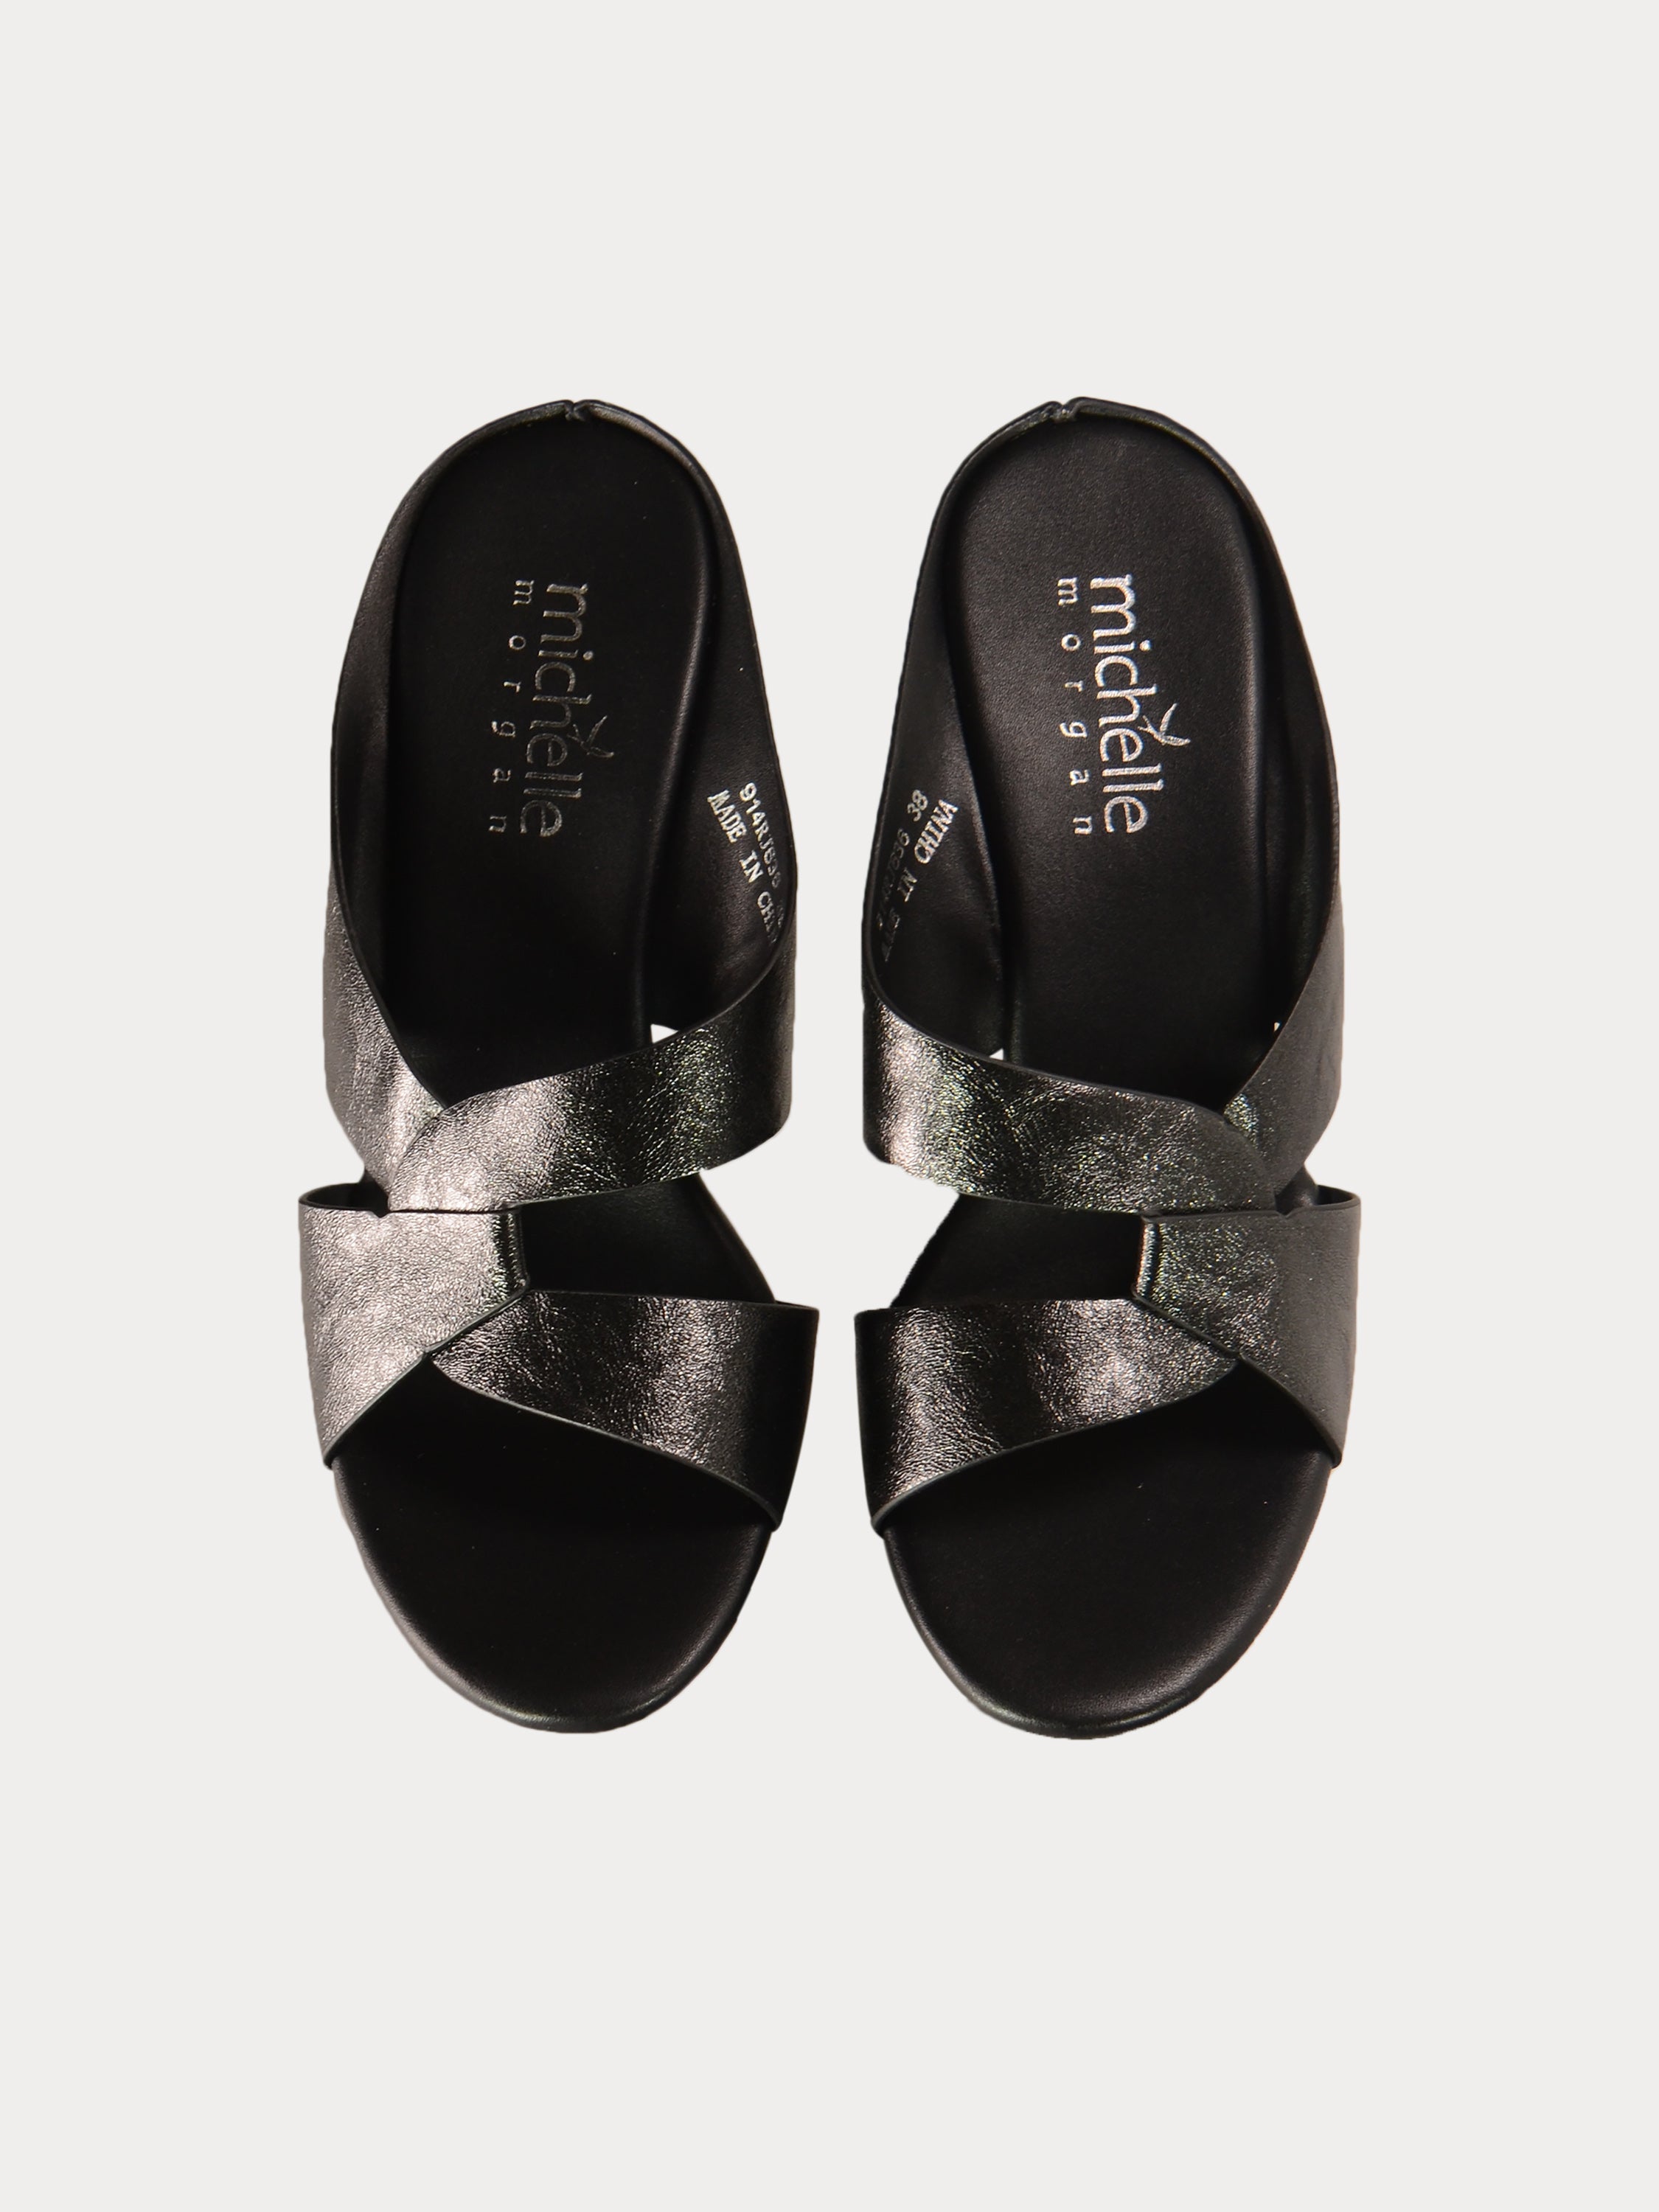 Michelle Morgan 914RJ636 Women's Brushed Heeled Sandals #color_Black